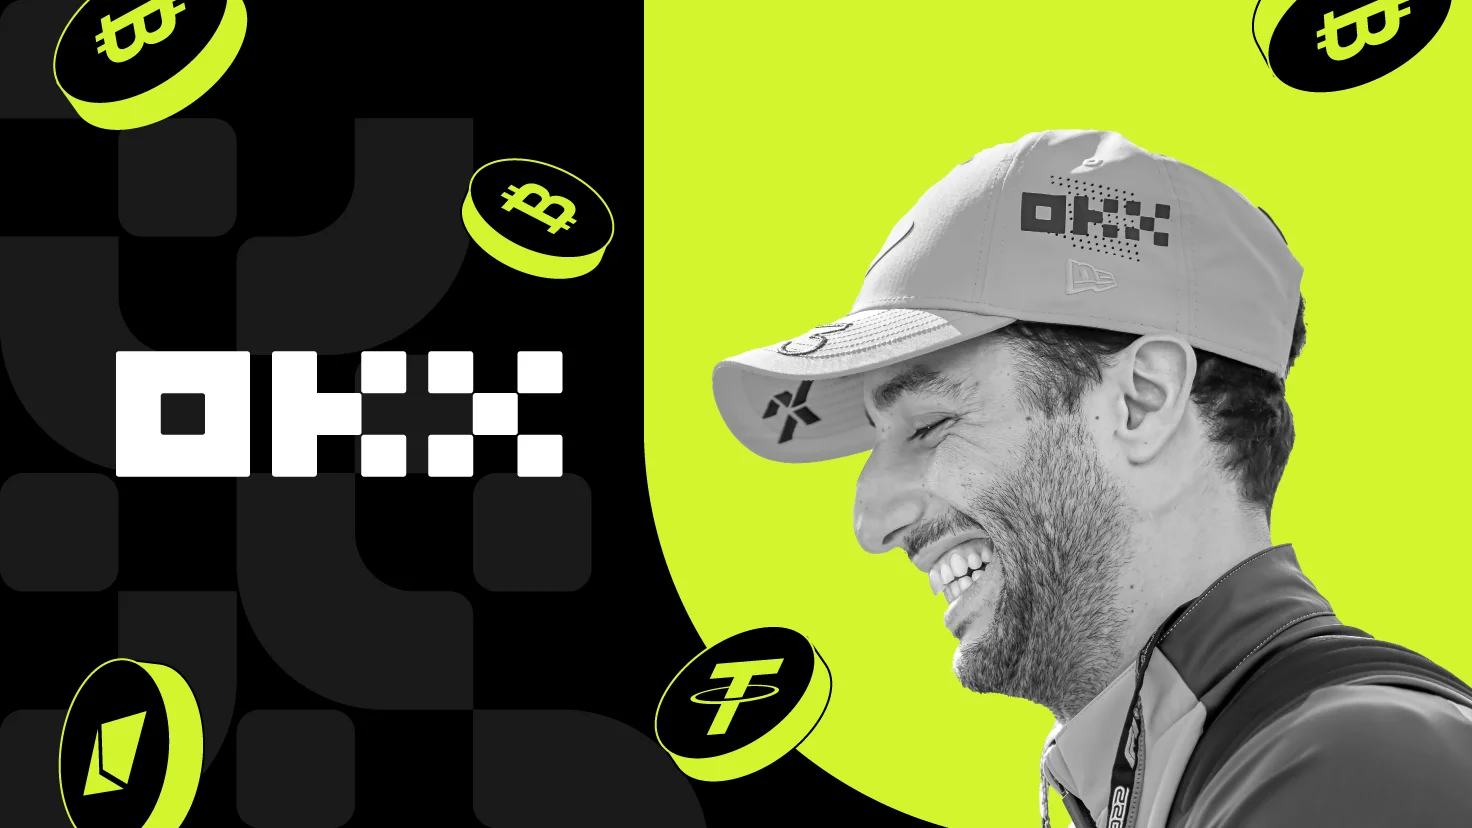 F1 Star Daniel Ricciardo Signed with Crypto Exchange OKX